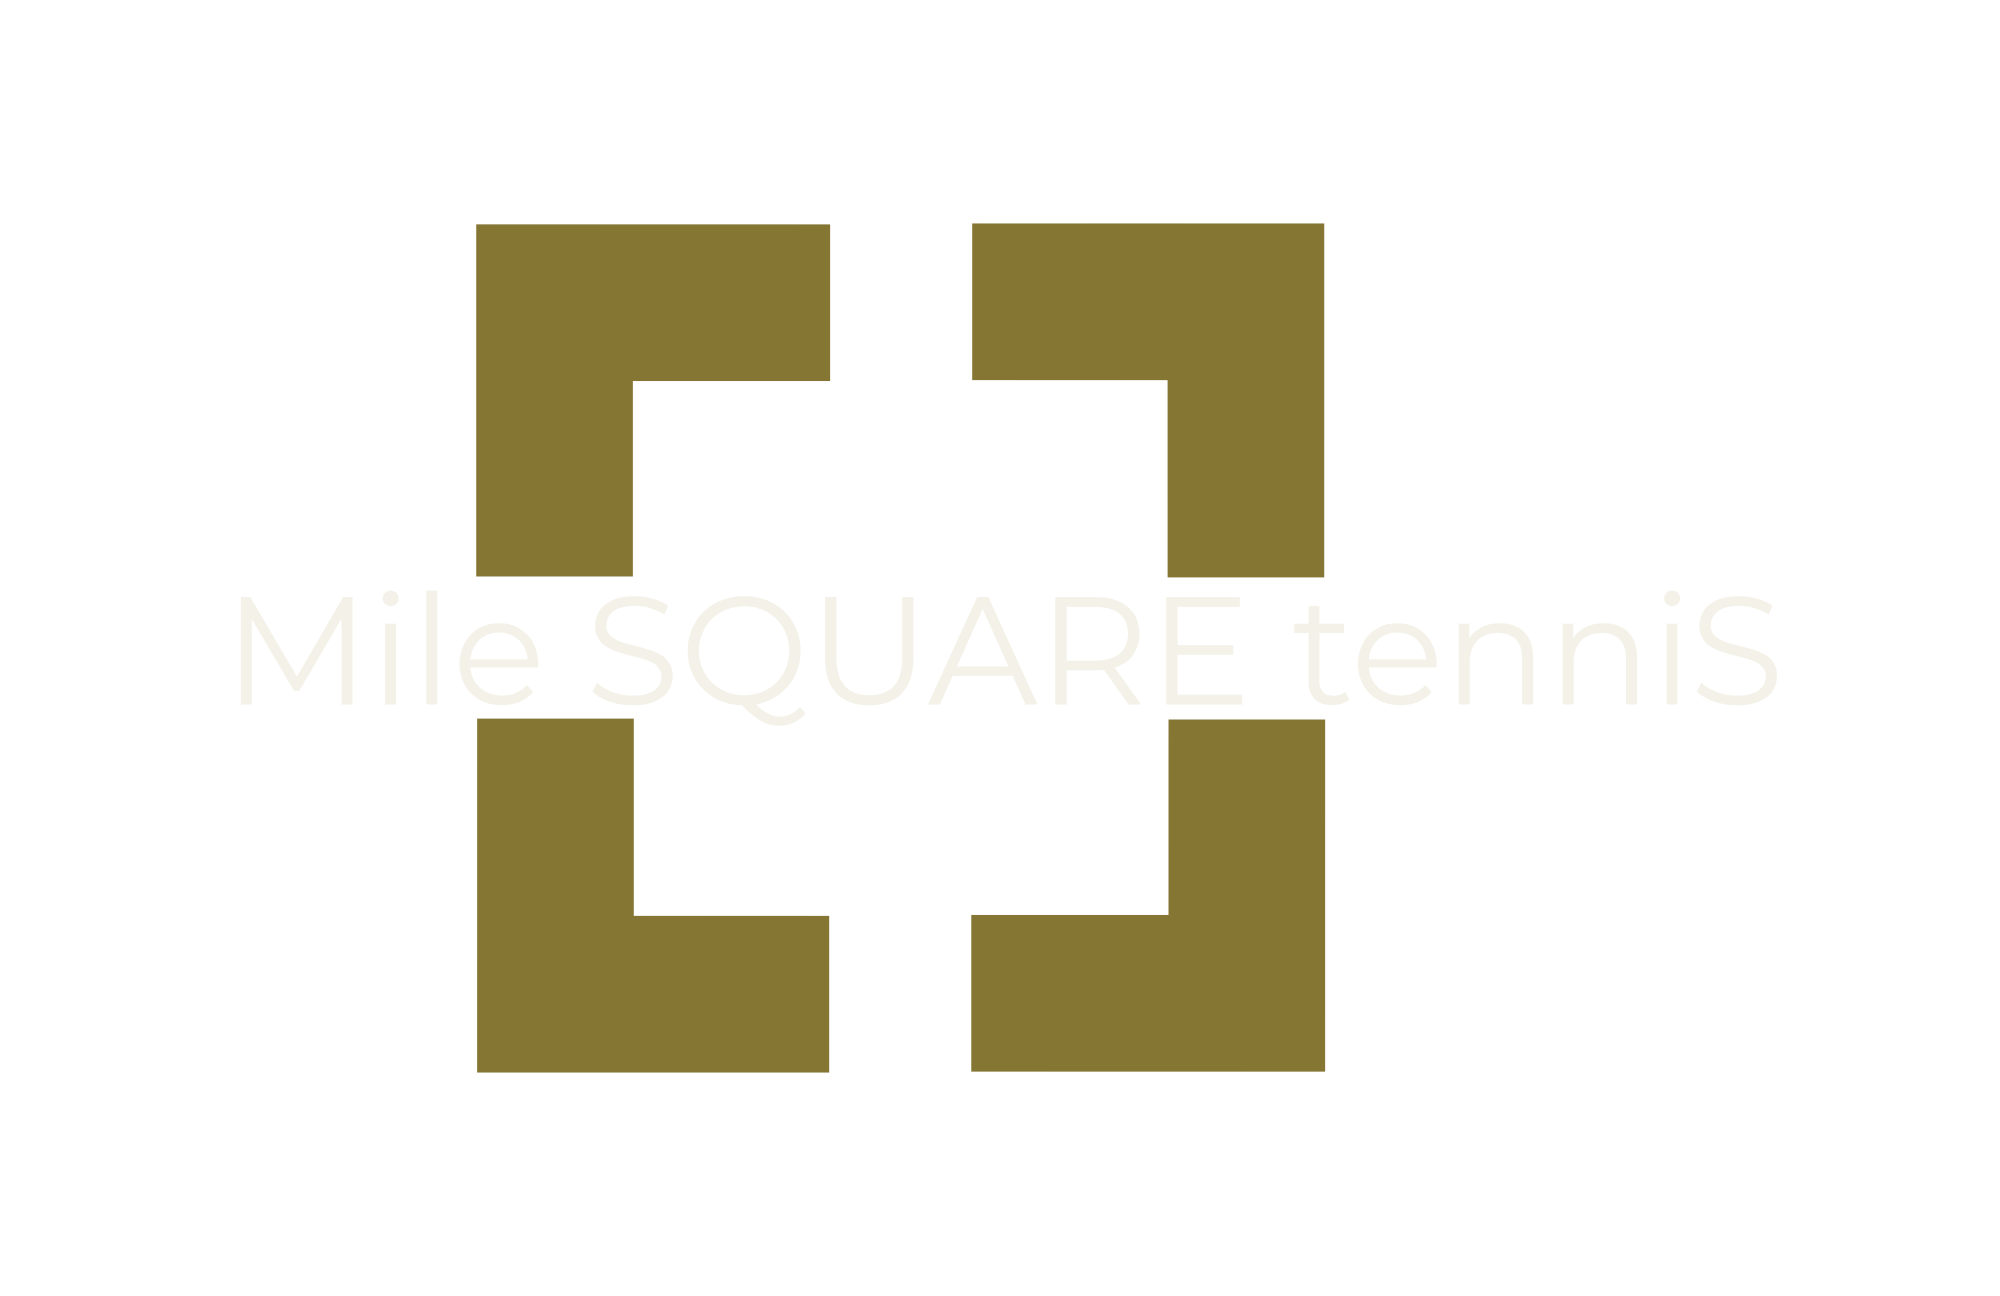 Mile Square Tennis